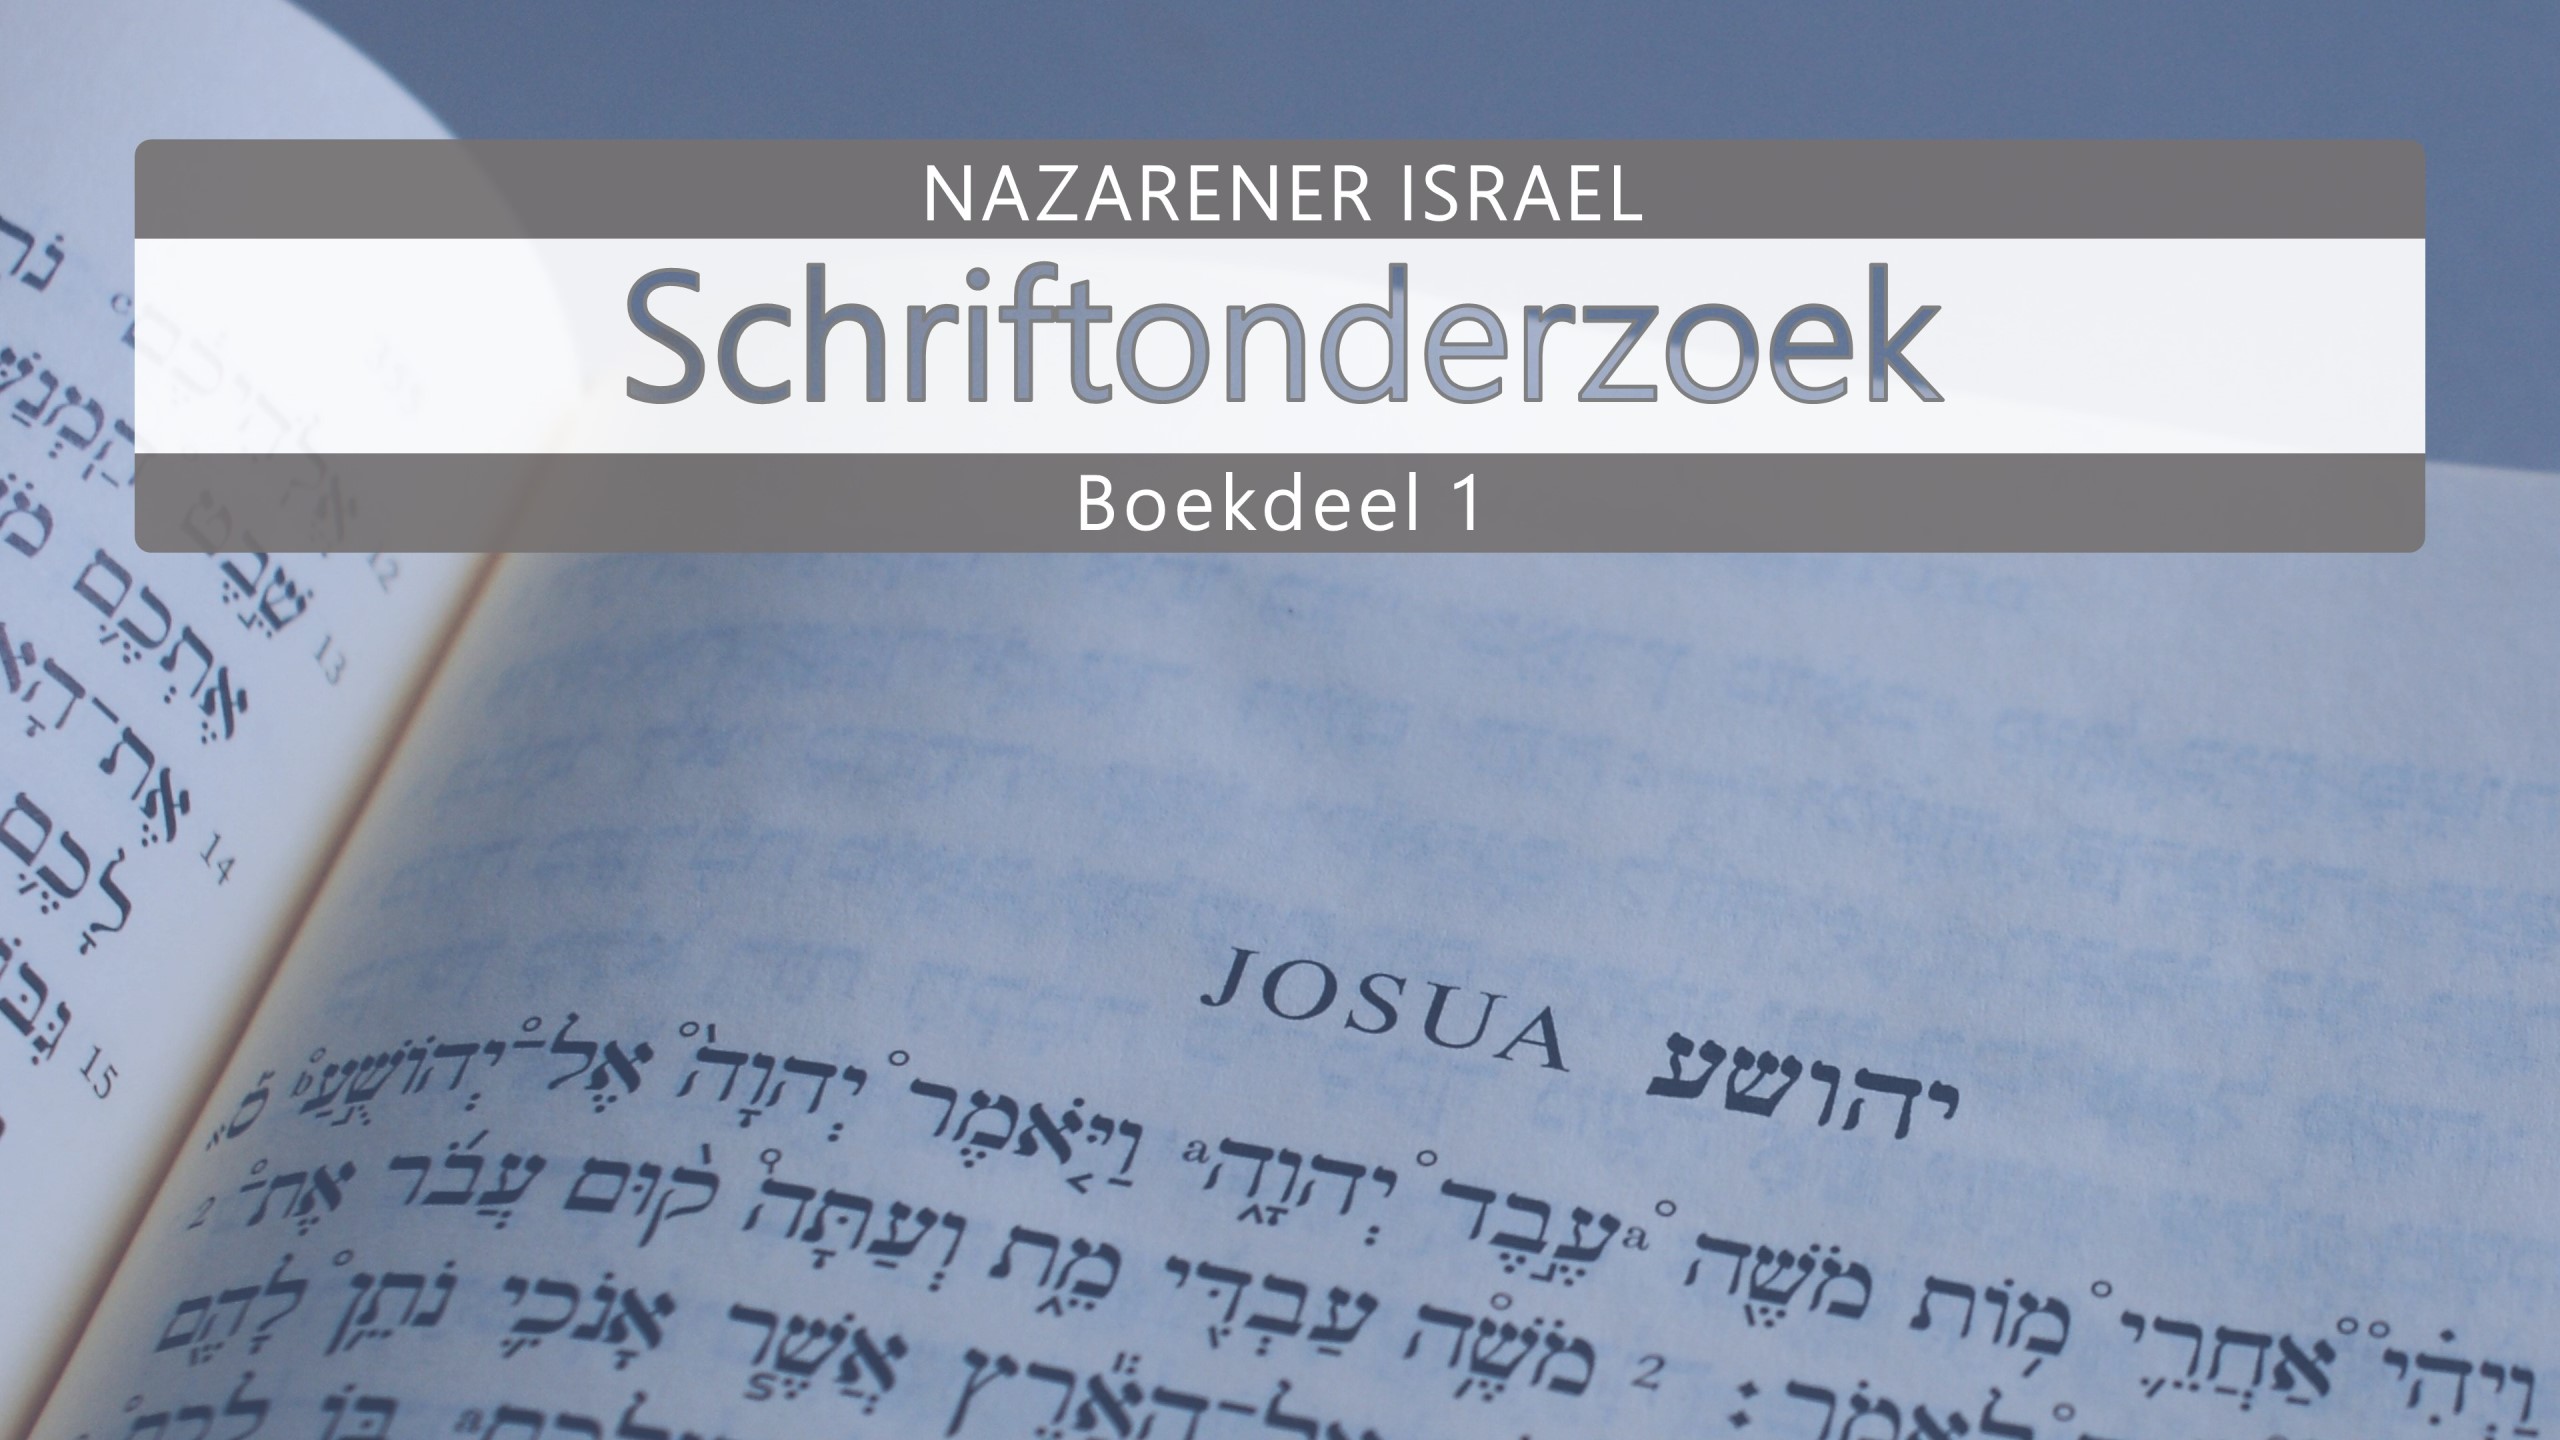 Nazarener Schriftonderzoek Boekdeel 1